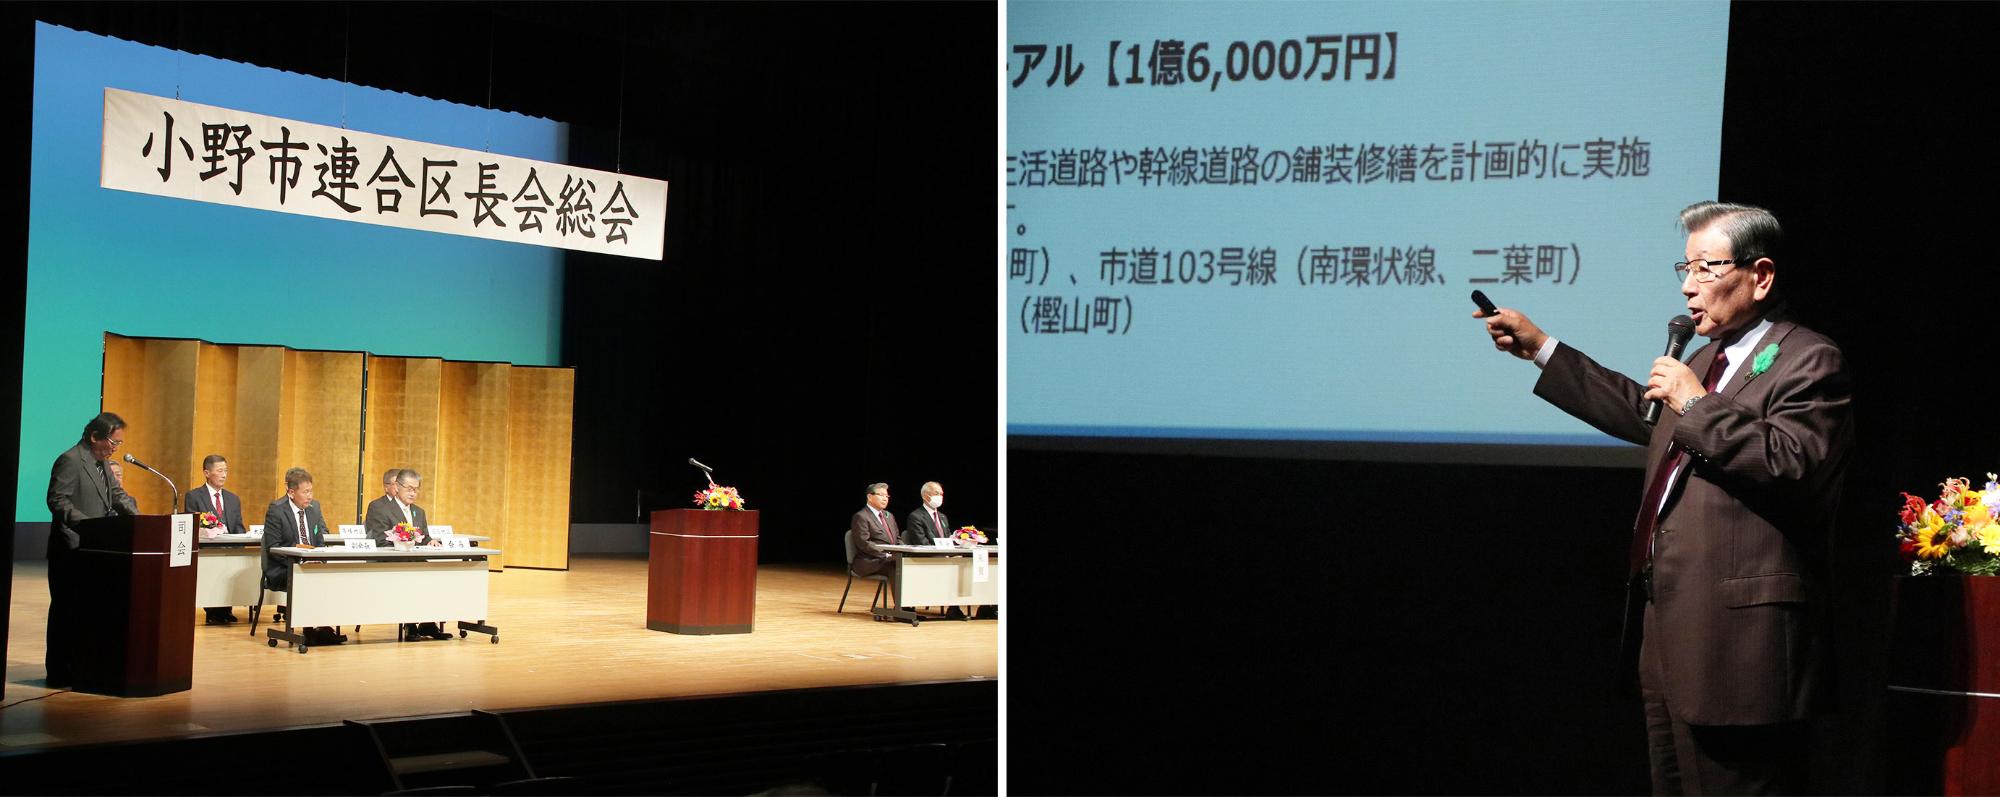 小野市連合区長会総会の様子と市長がプレゼンしている場面の写真